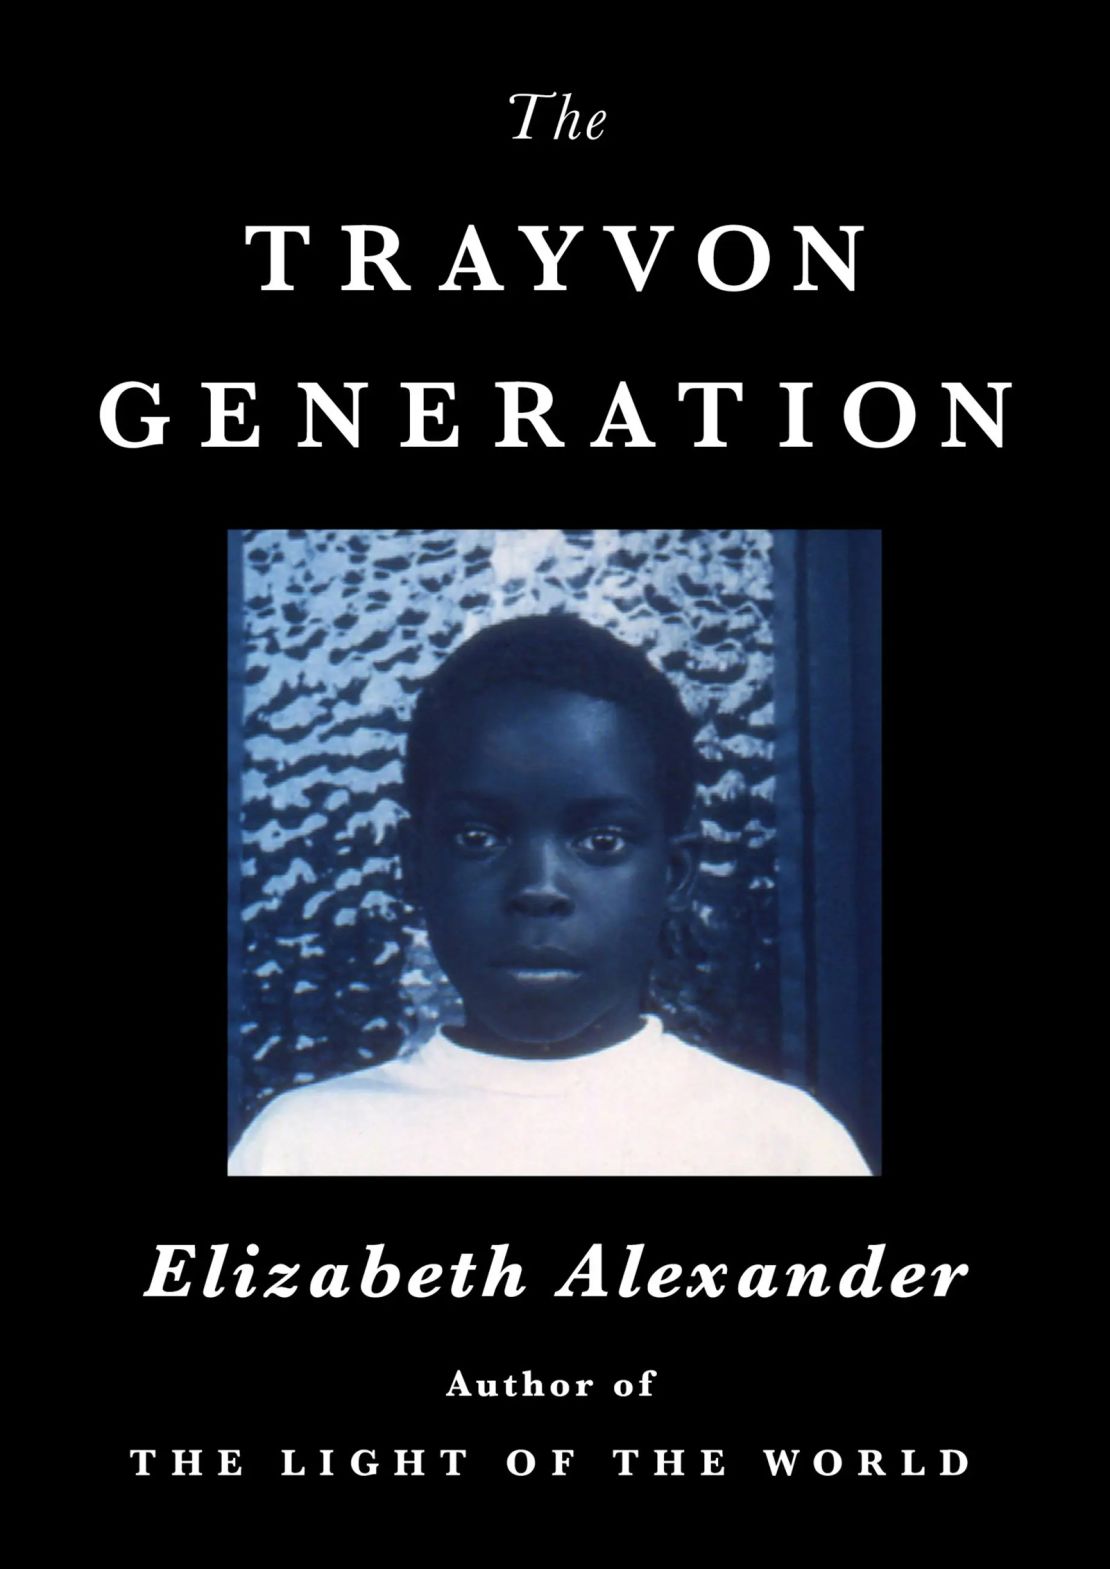 05 best books 2022 trayvon generation